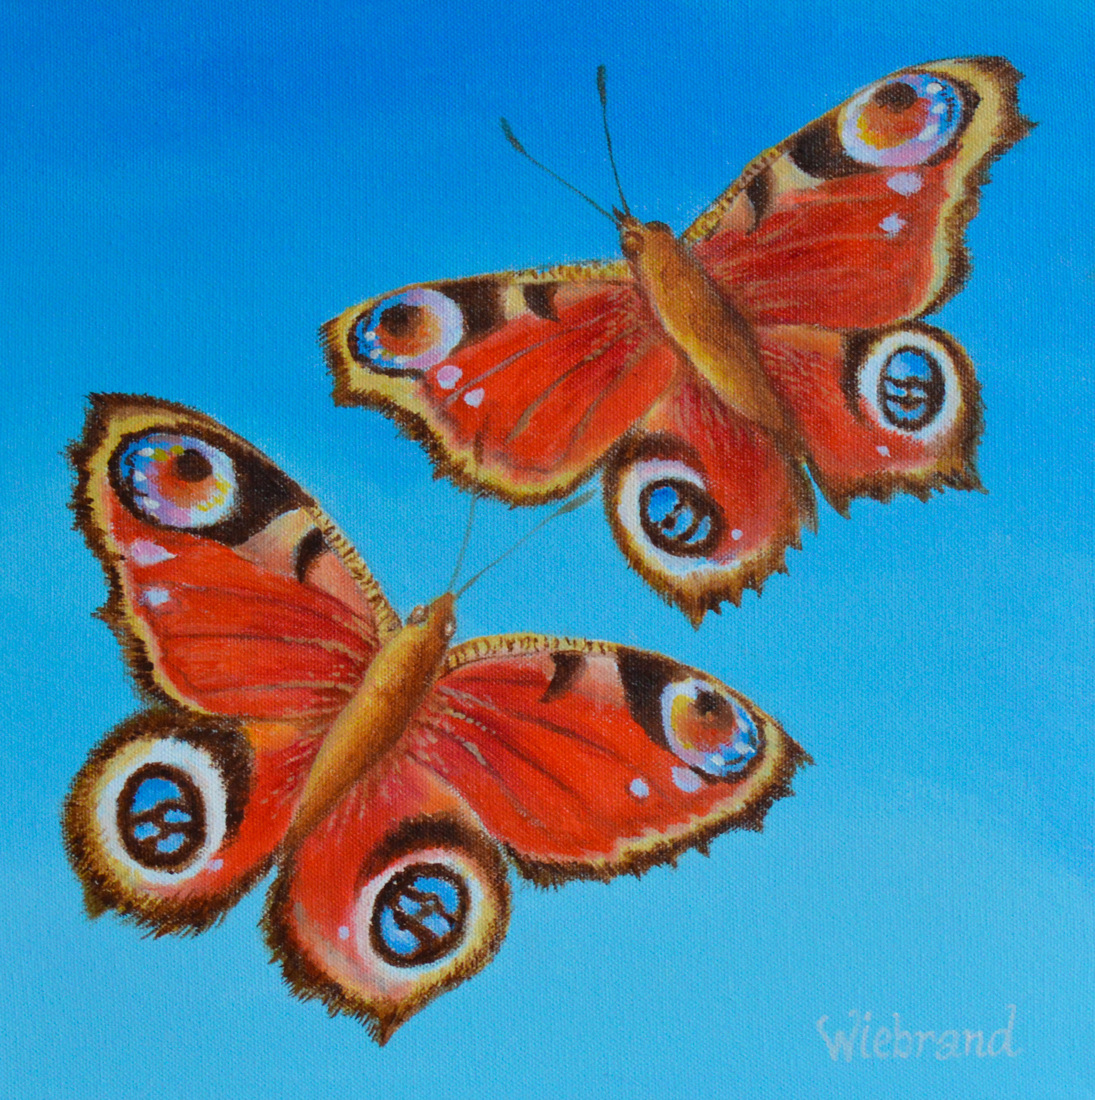 Leer vlinders schilderen